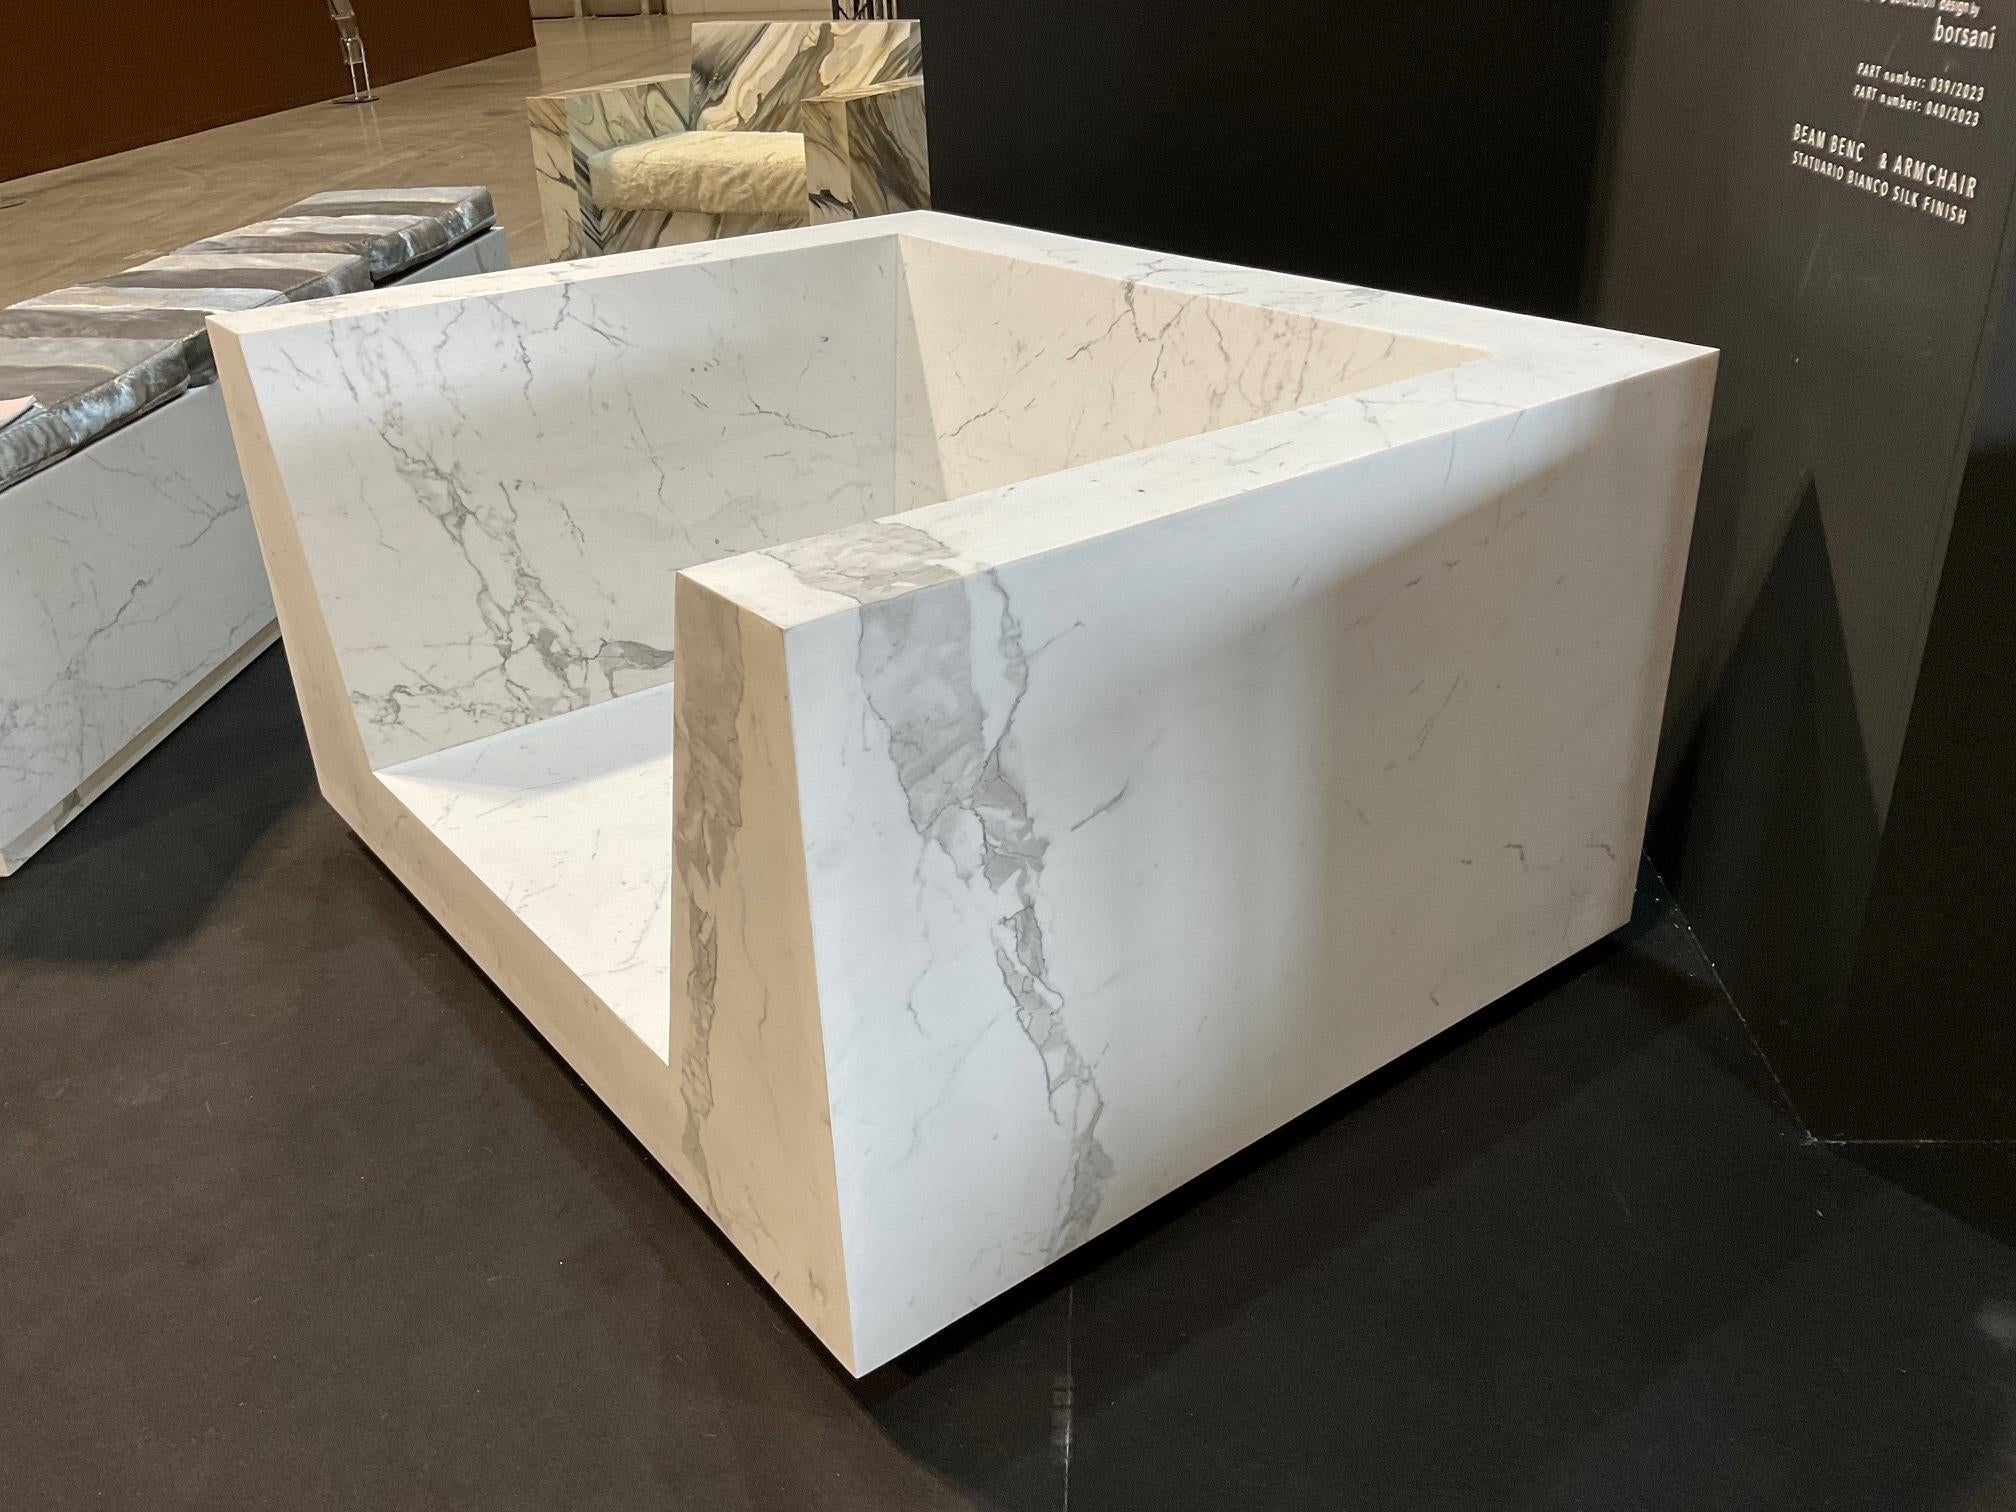 Création d'une ligne de meubles en marbre d'une fine épaisseur de 5 mm avec un système unique au monde en provenance d'Italie afin d'obtenir un meuble léger et solide pour le déplacer facilement. Cette collection de meubles a été conçue & créée par